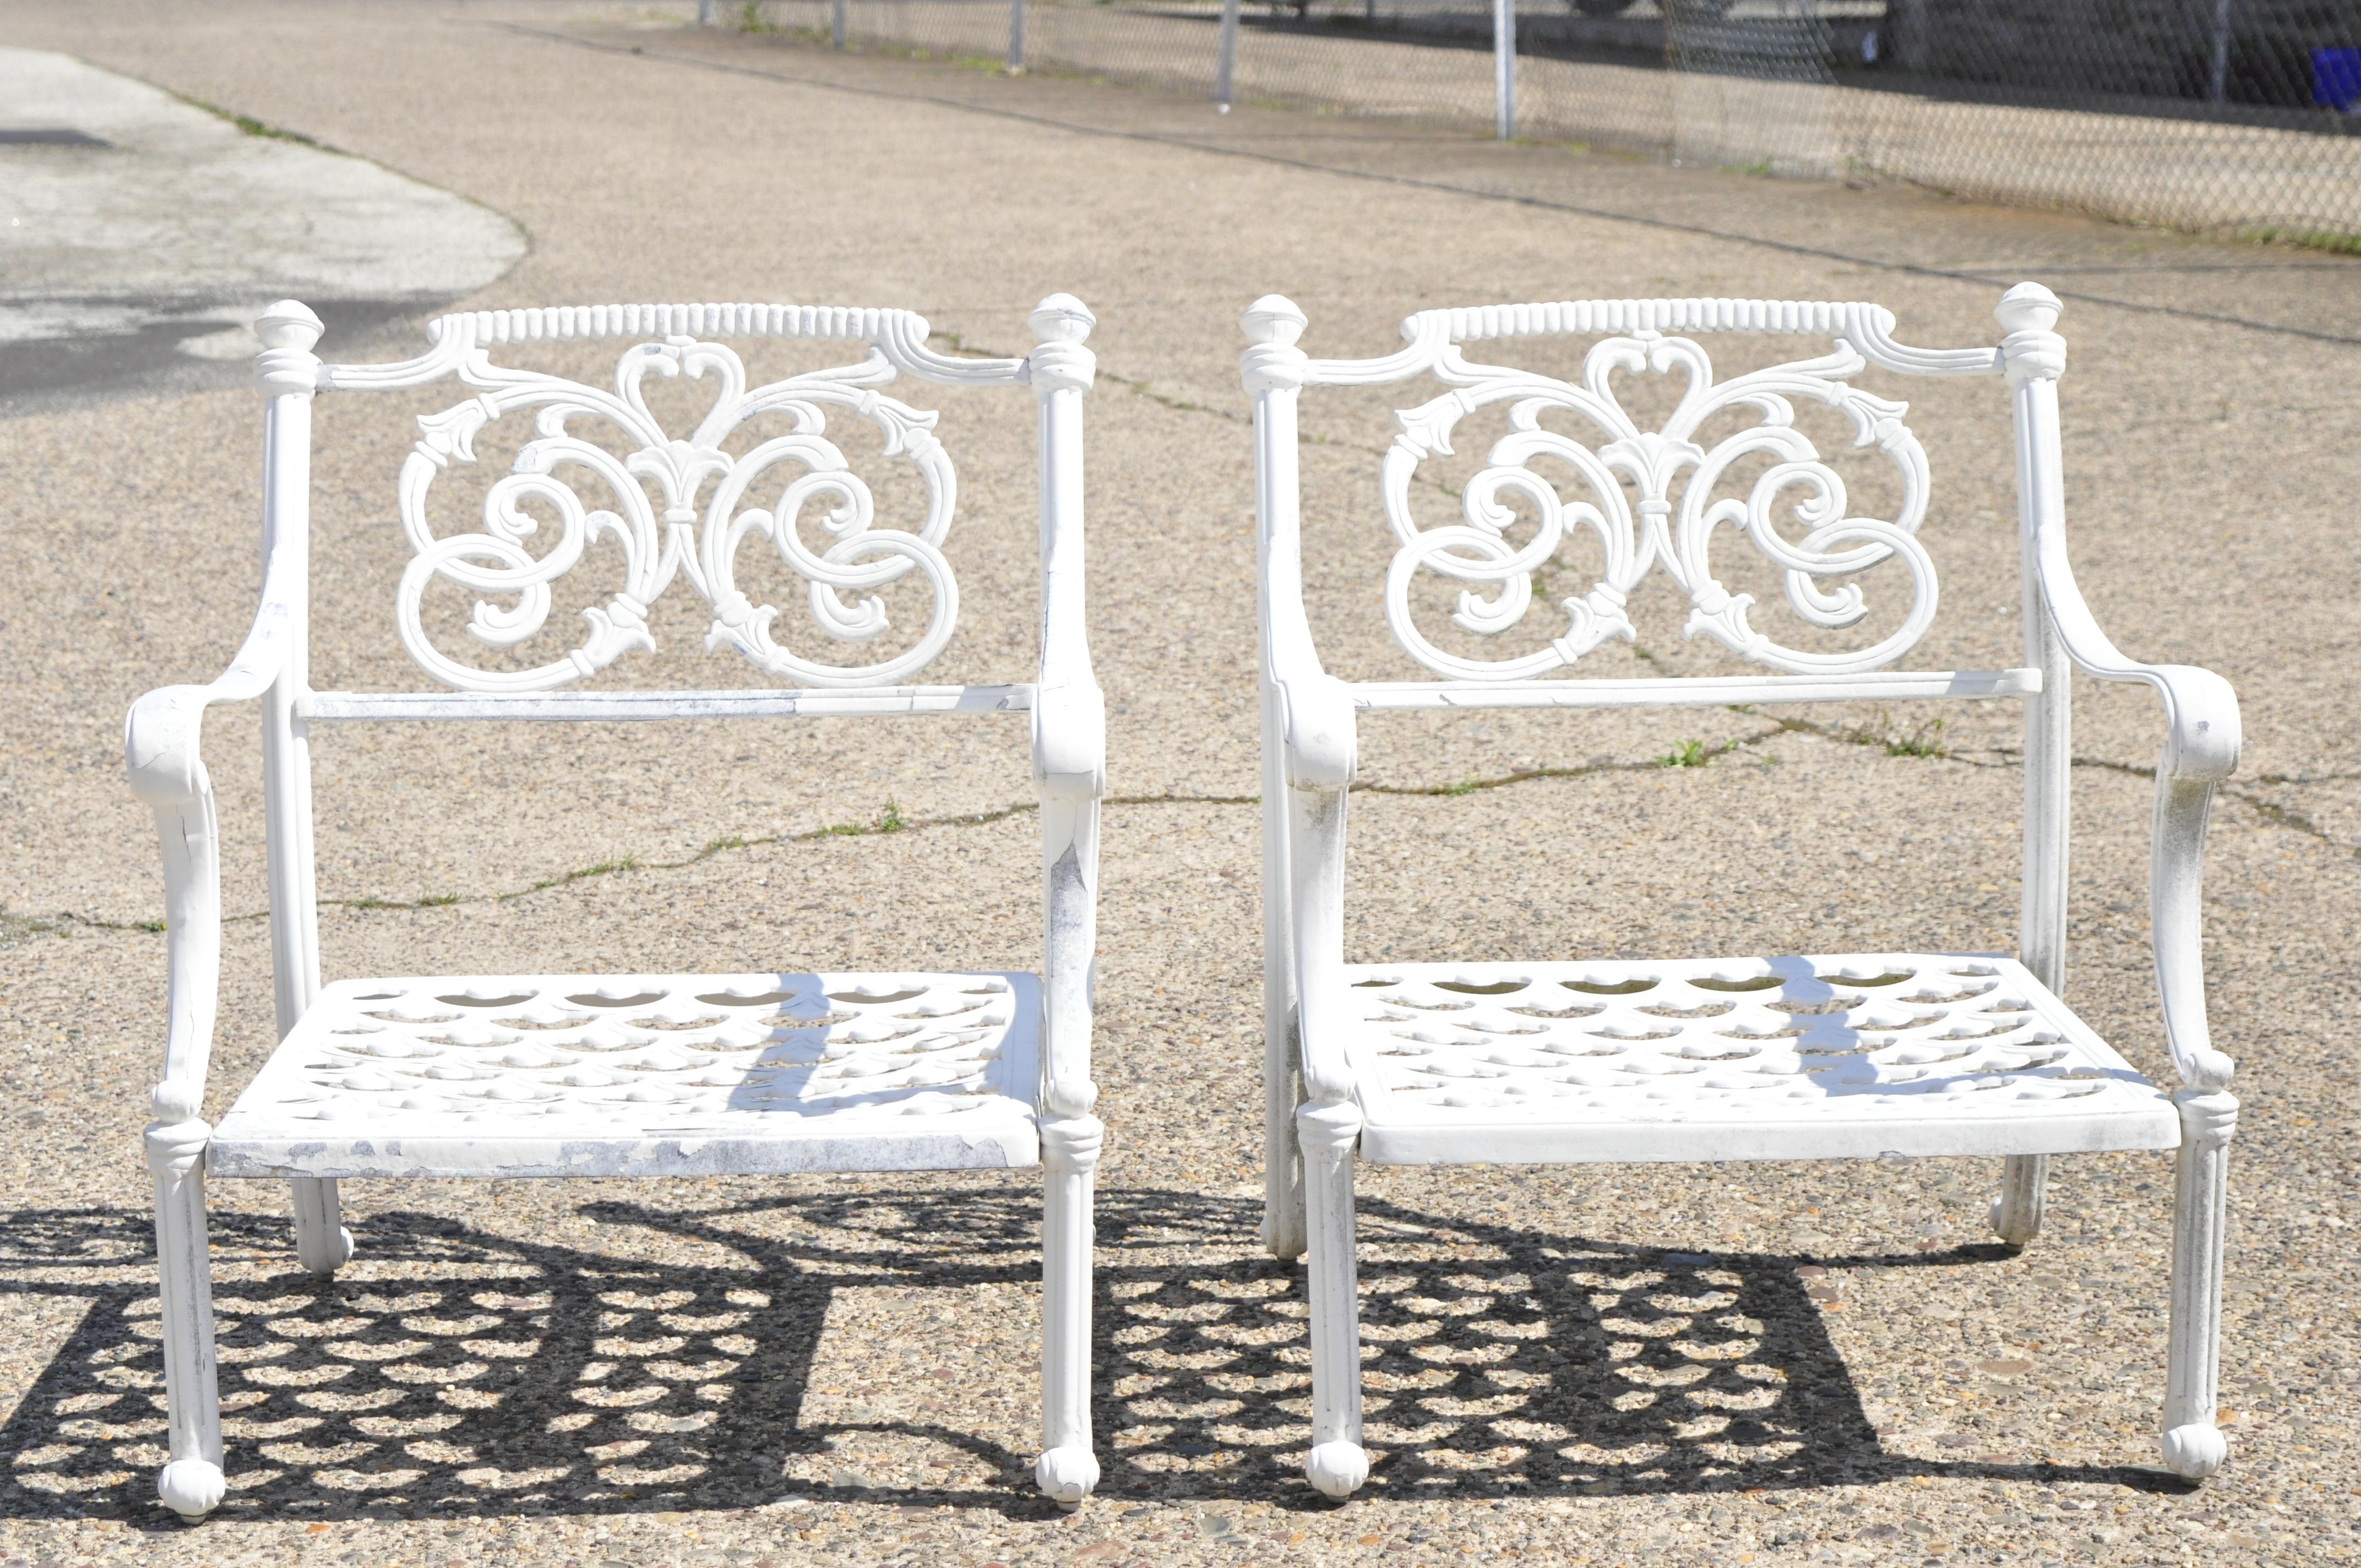 Moderne italienische Regency Style Scrollwork gegossenem Aluminium Garden Patio Club Lounge Sessel - ein Paar. Der Artikel zeichnet sich durch ausgefallene, verschnörkelte Rückenlehnen, niedrige, bequeme Formen, gitterförmige Sitzflächen, eine